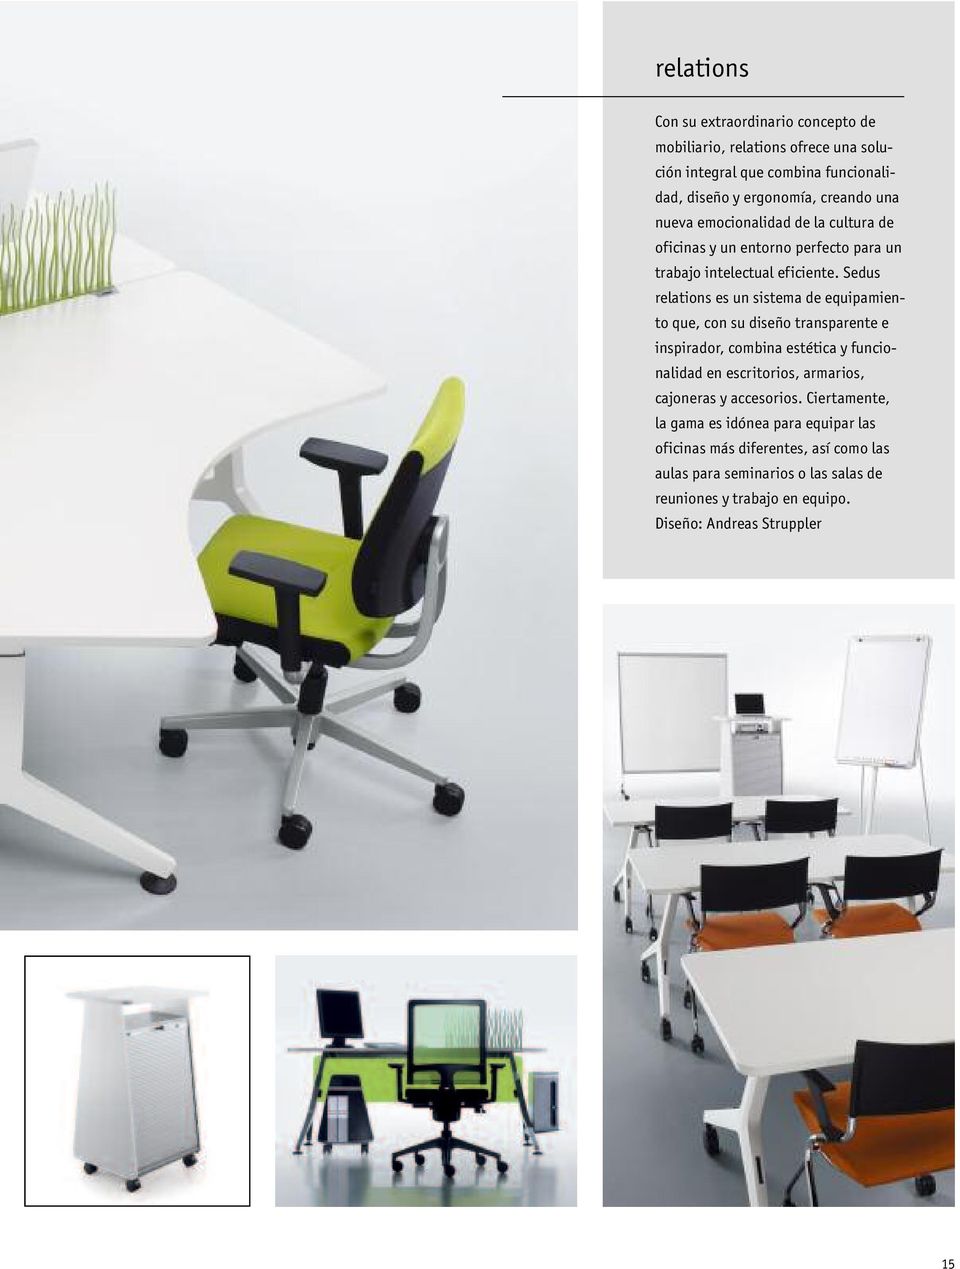 Sedus relations es un sistema de equipamiento que, con su diseño transparente e inspirador, combina estética y funcionalidad en escritorios, armarios,